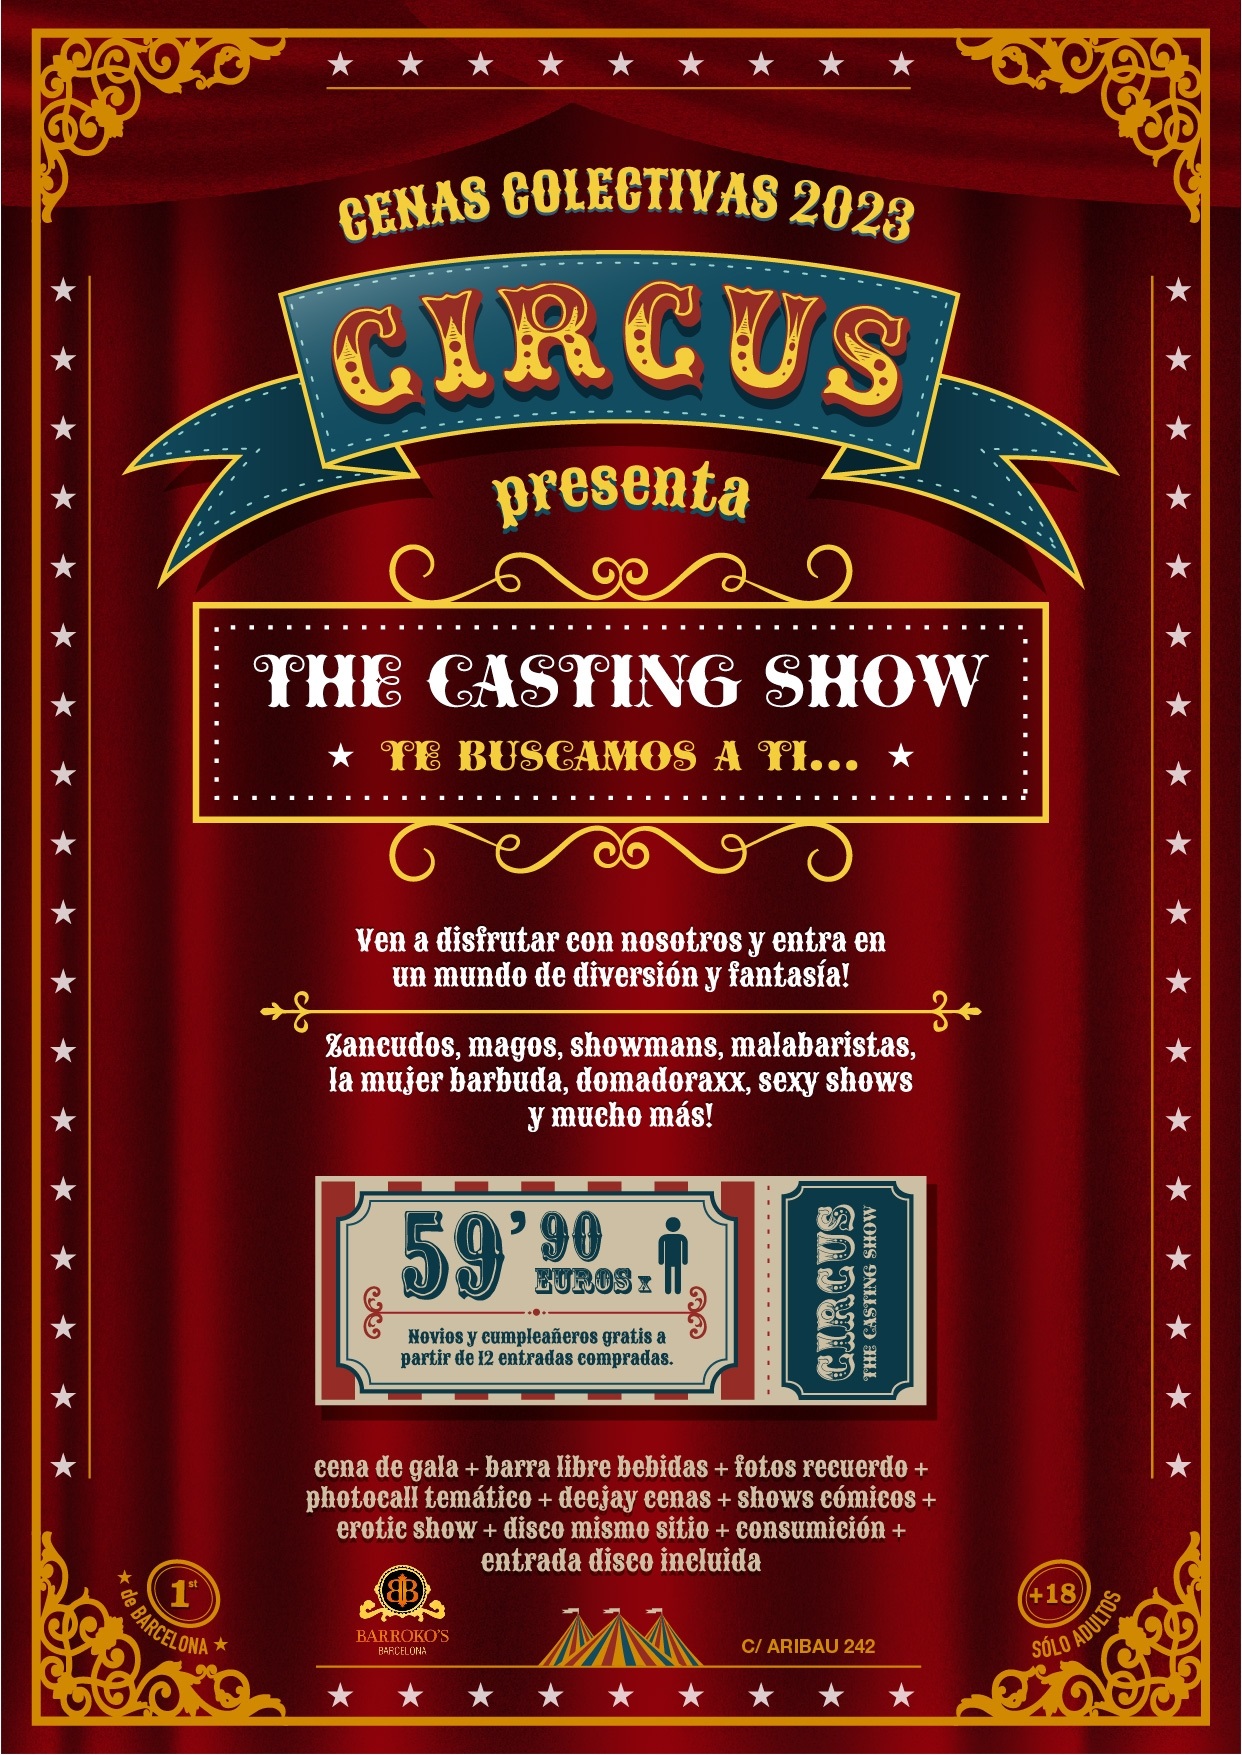 Circus Barrokos | Cenas colectivas